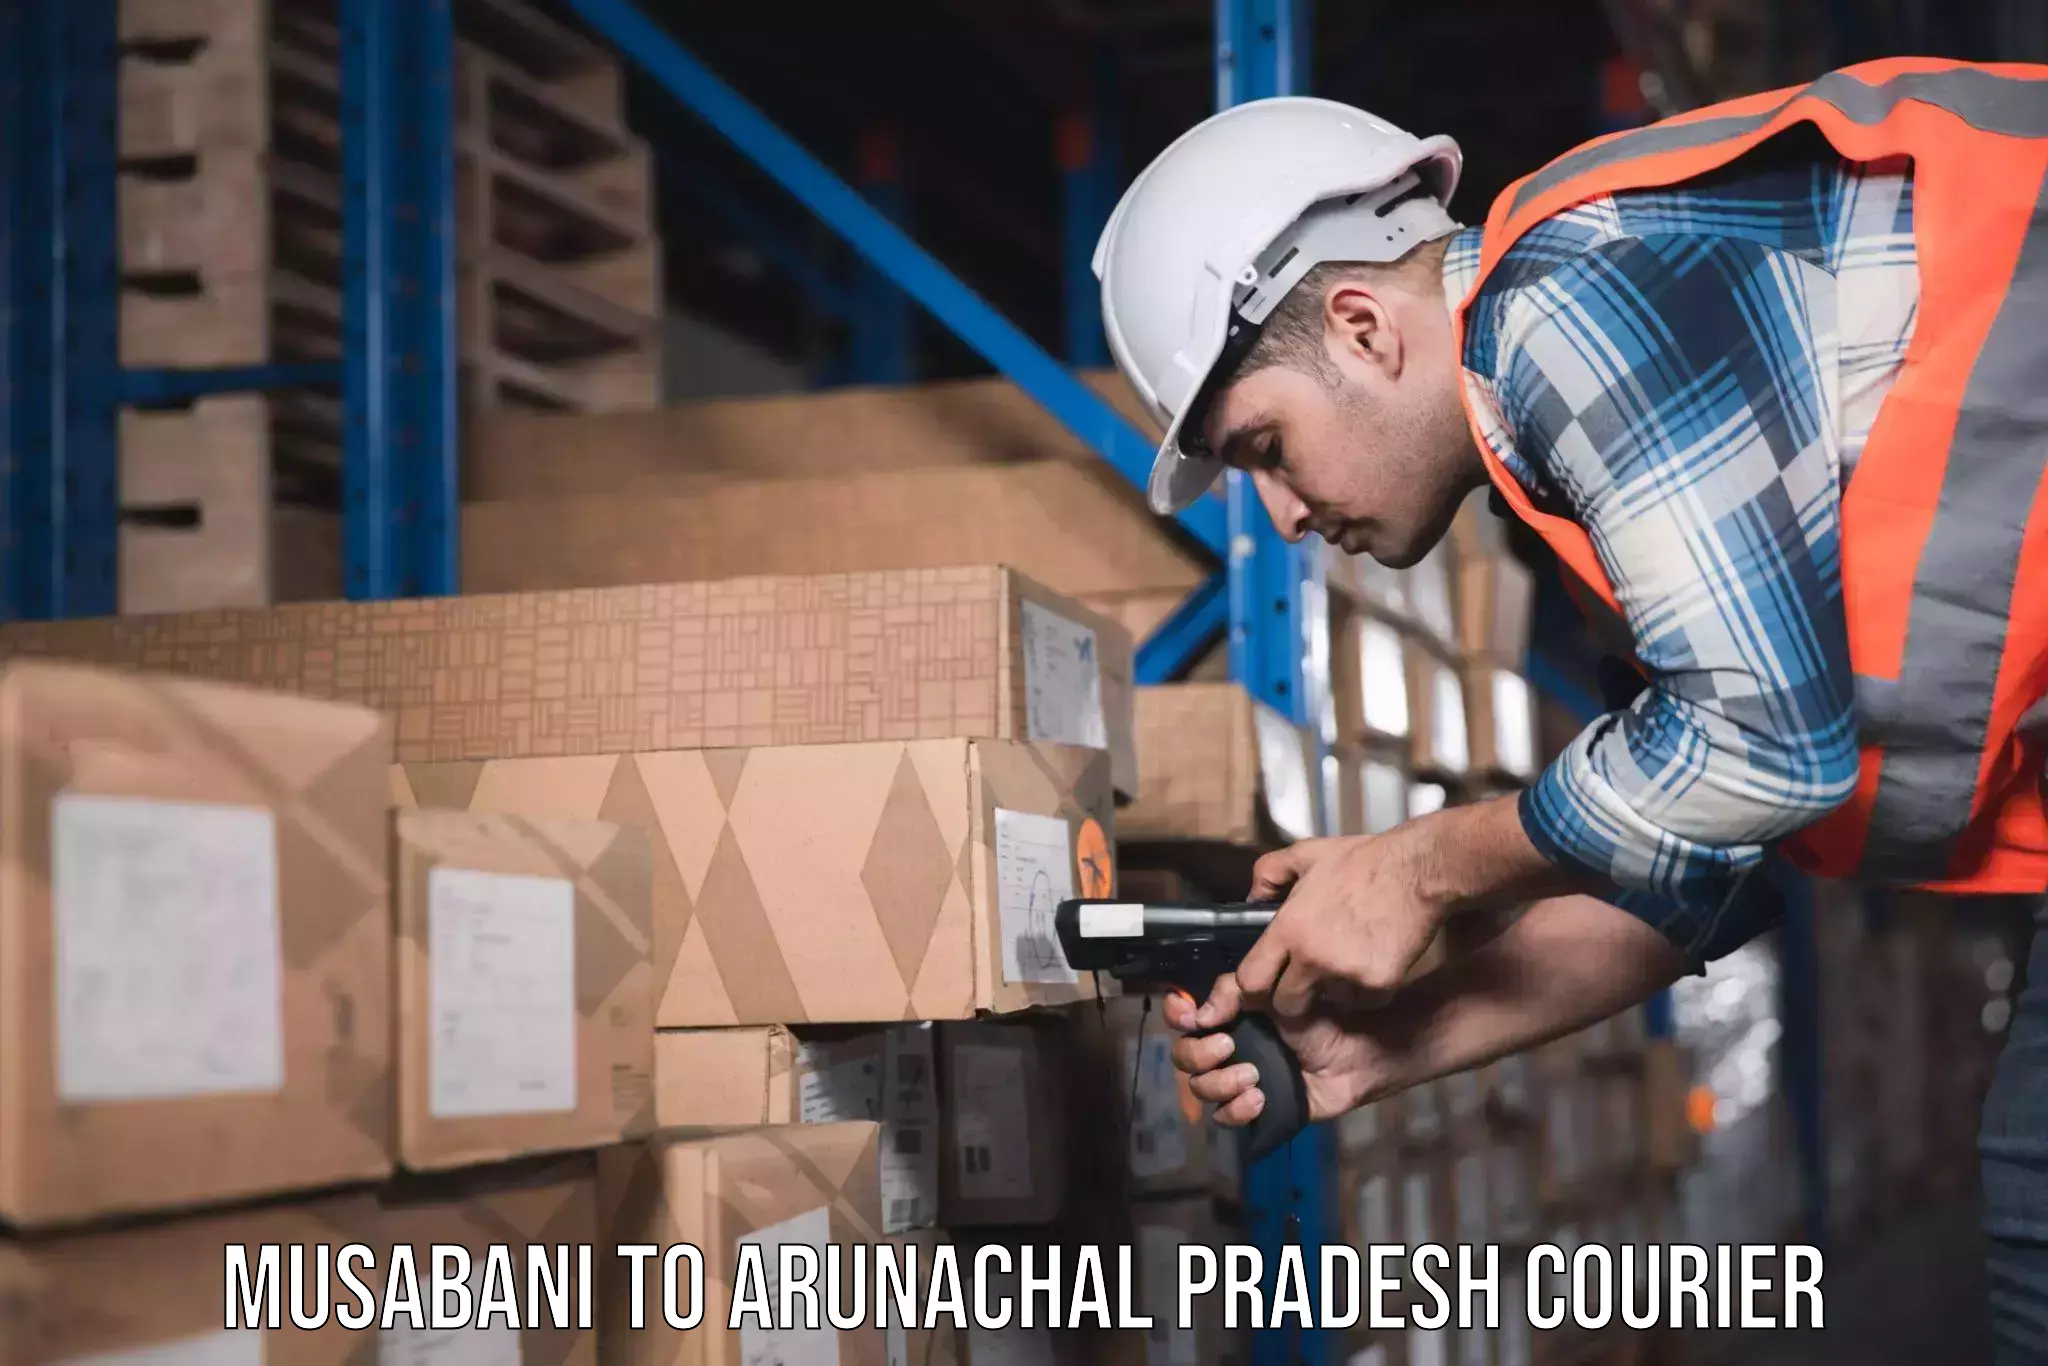 Furniture moving experts Musabani to Arunachal Pradesh